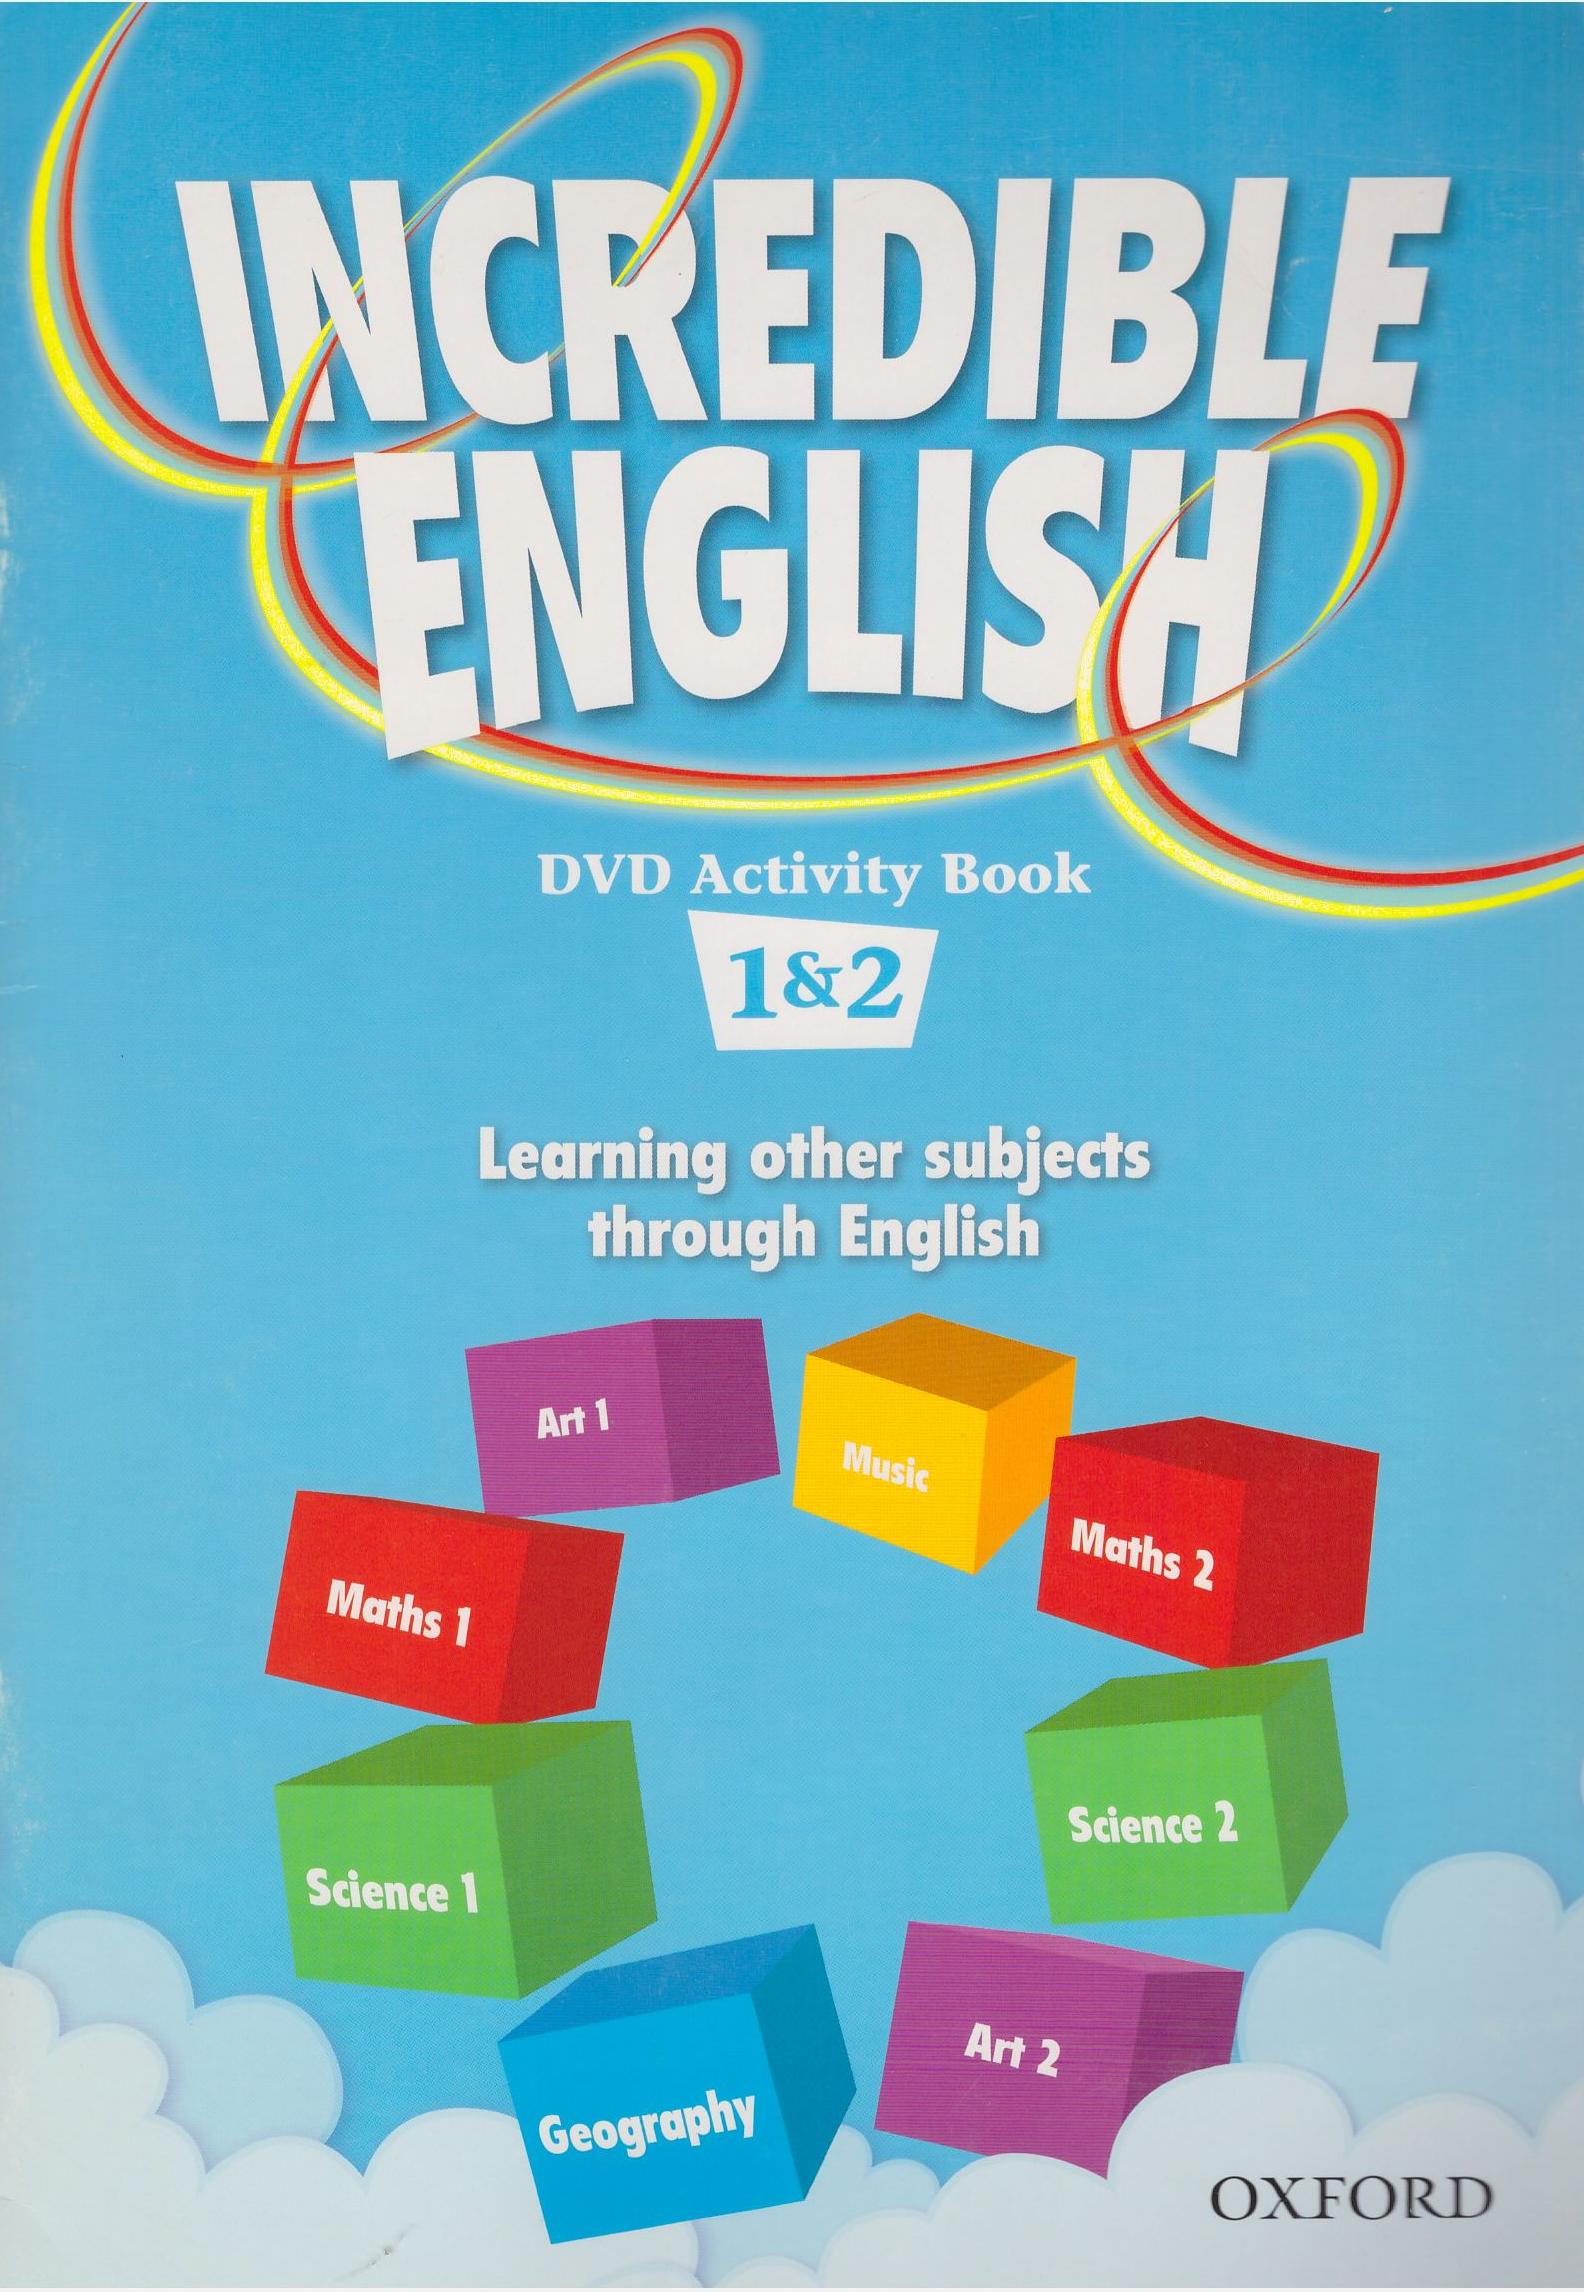 INCREDIBLE ENGLISH 1&2 DVD Activity Book